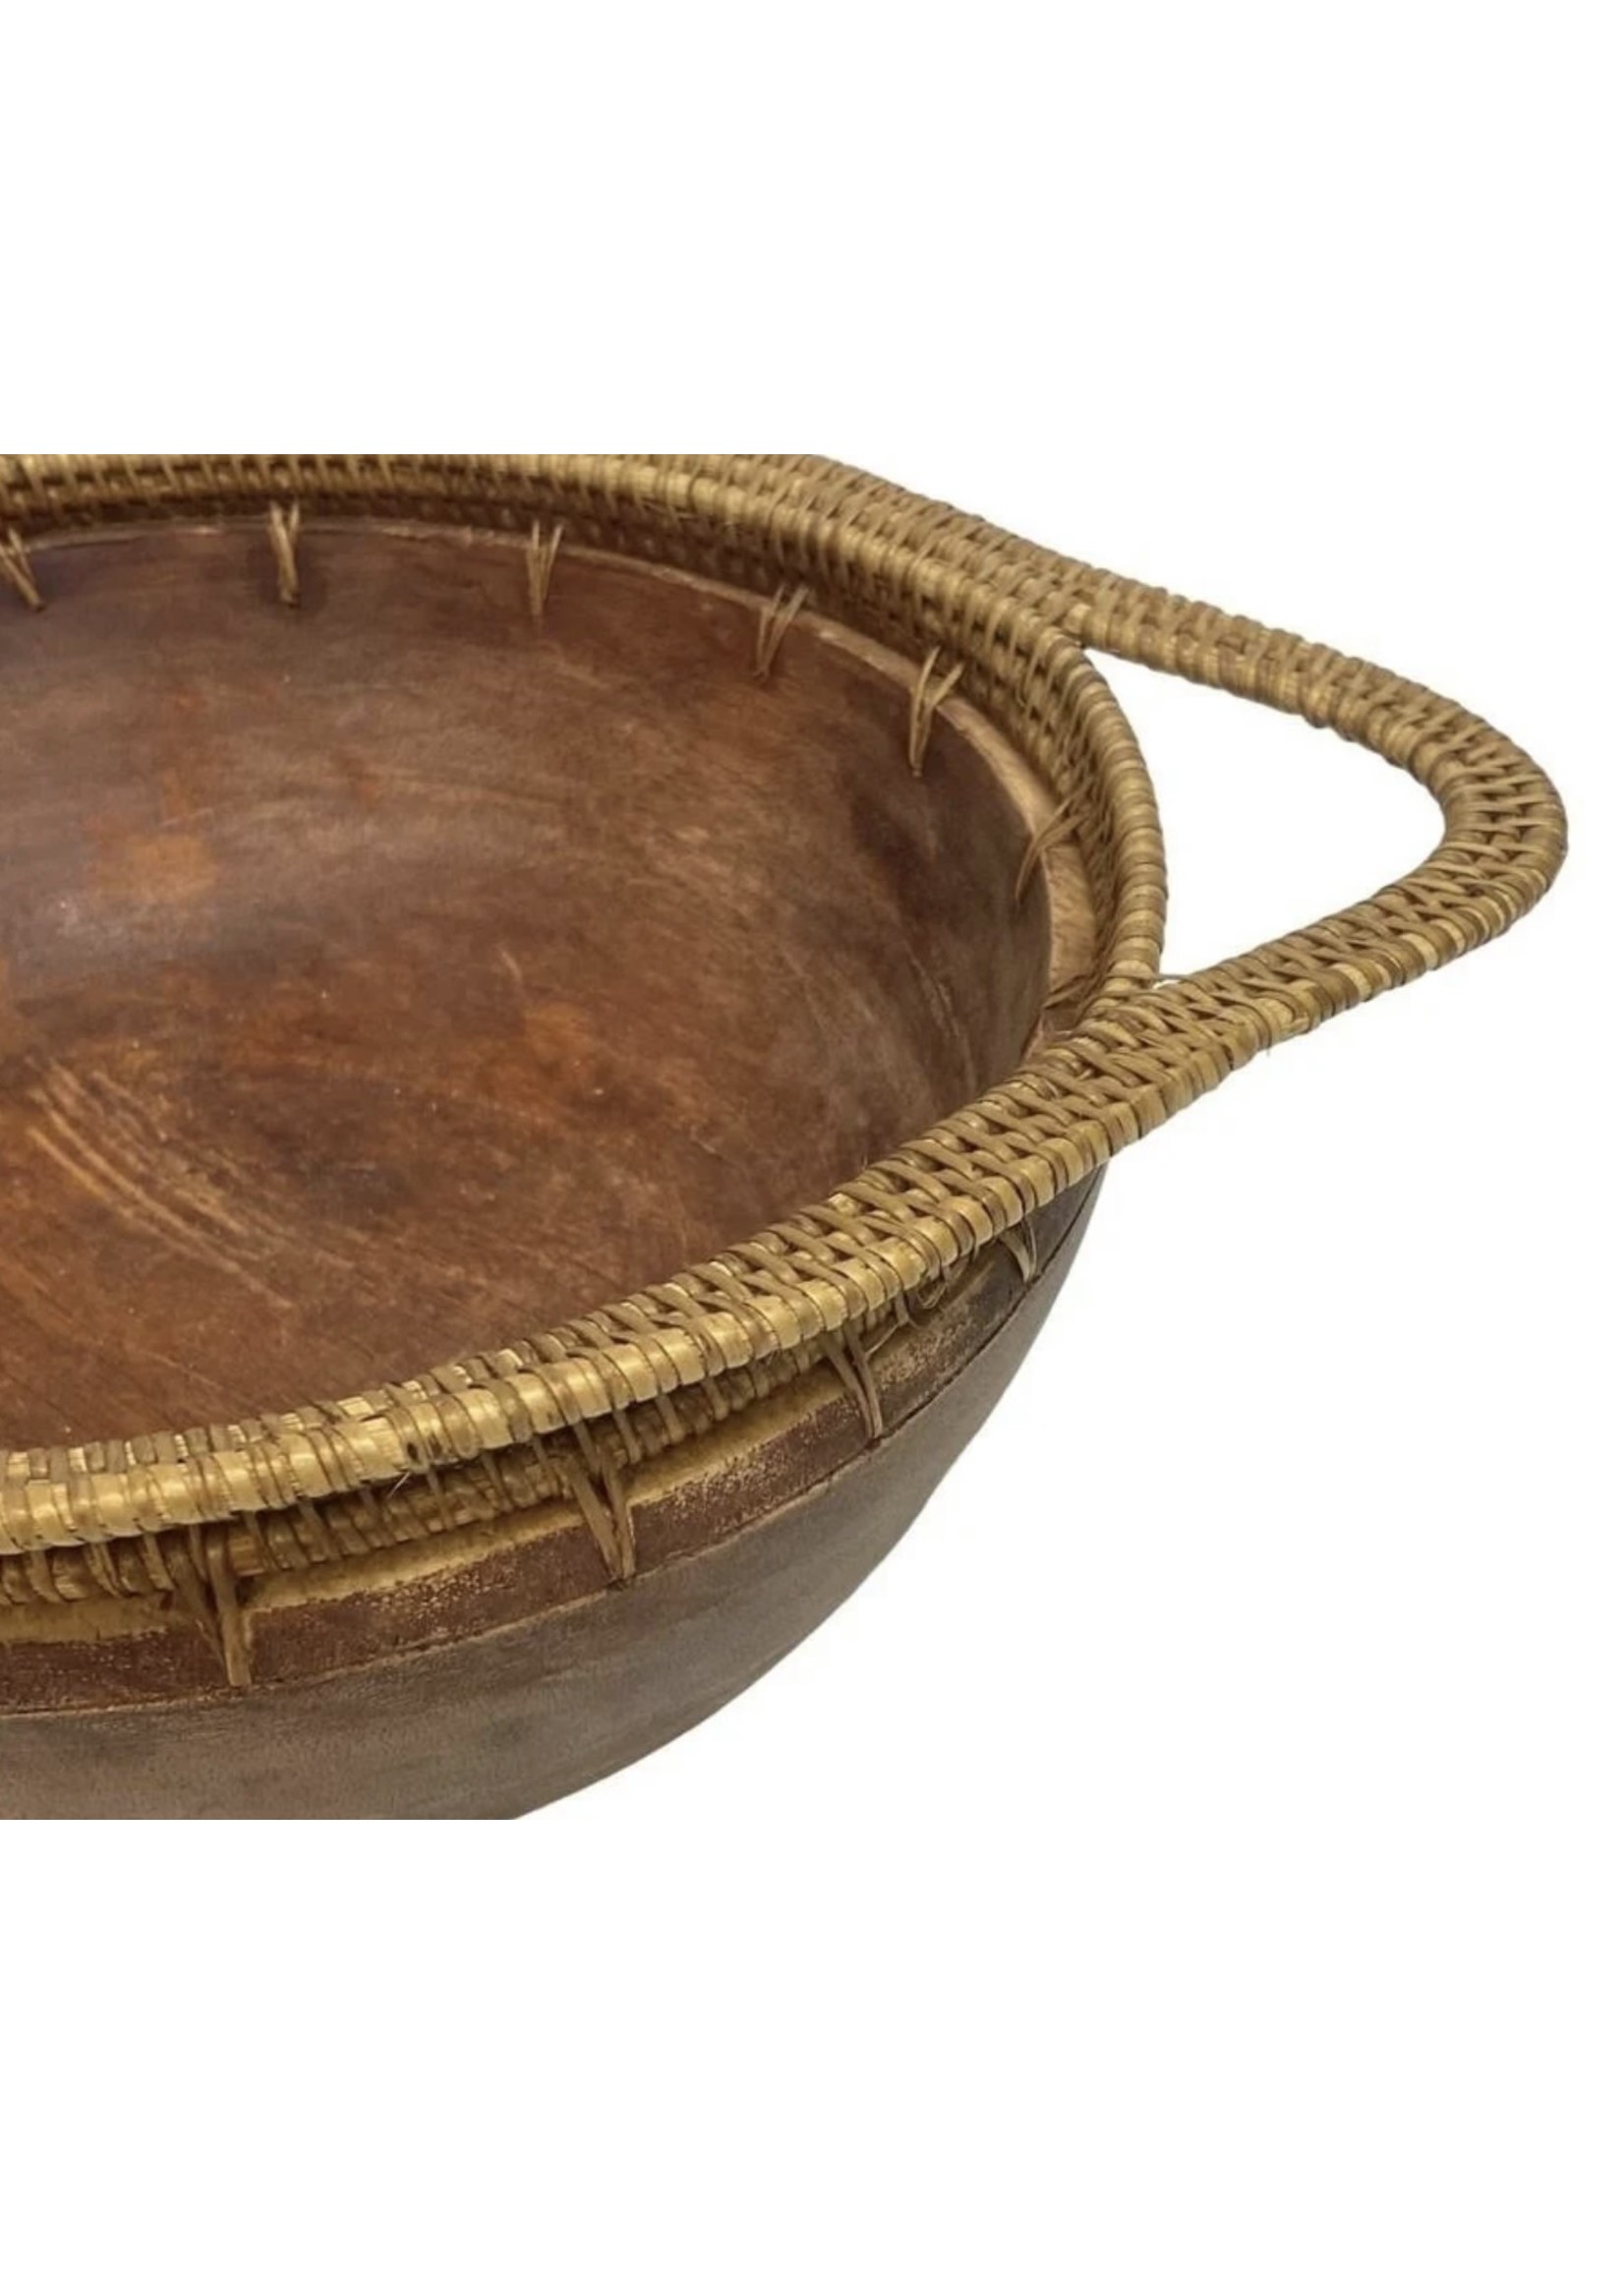 Vintage African Tribal Basket - pick up only